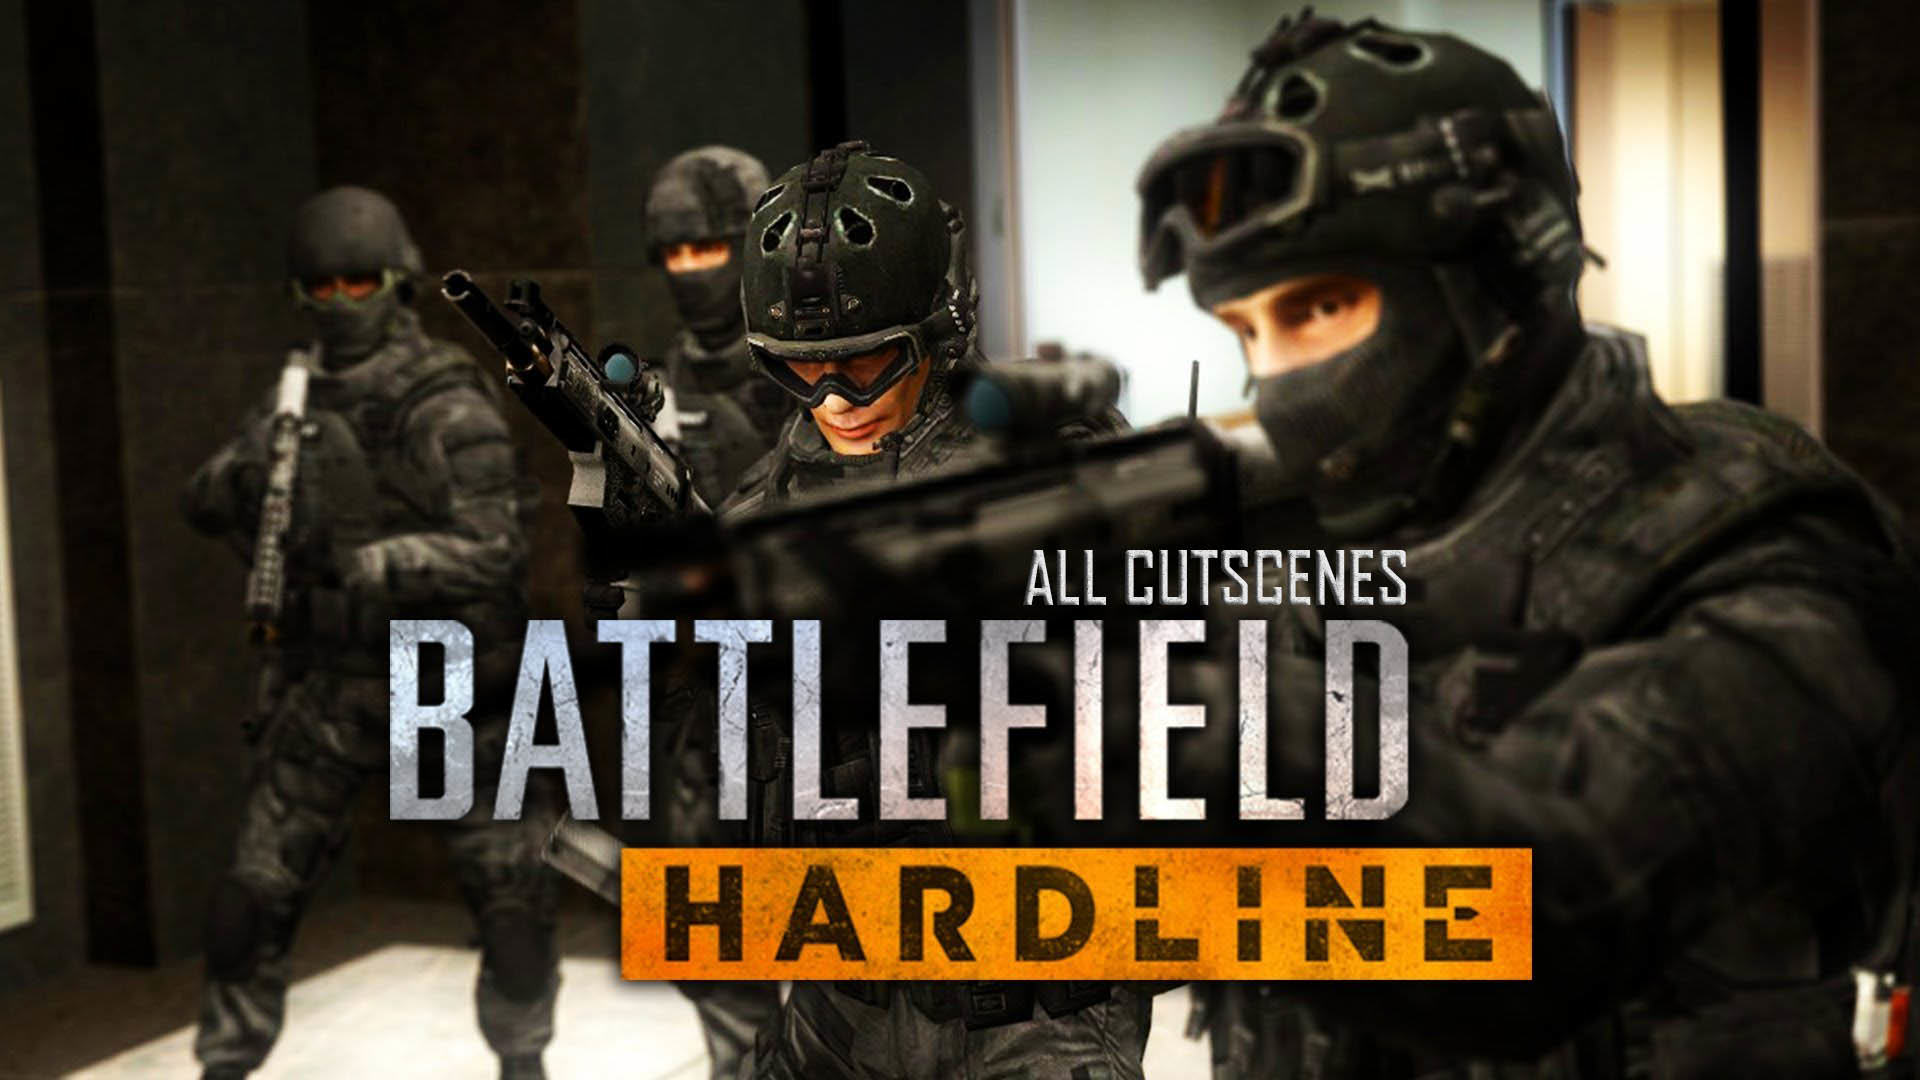 Battlefield Hardline Full Movie All Cutscenes 1